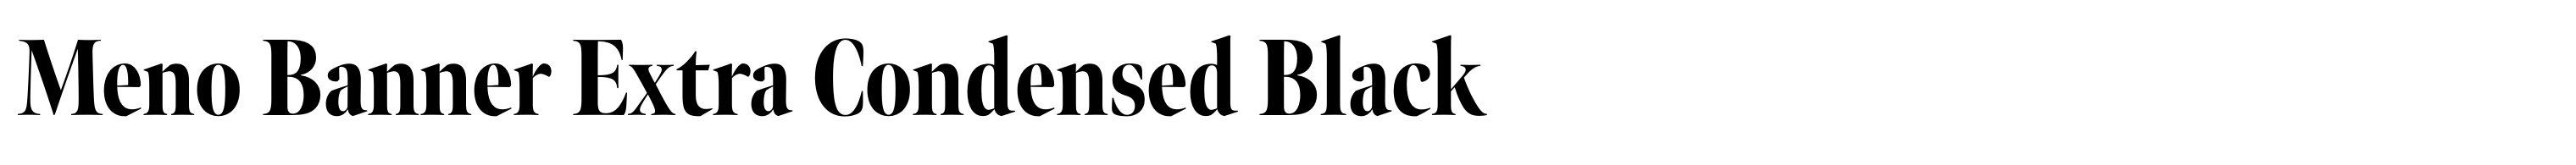 Meno Banner Extra Condensed Black